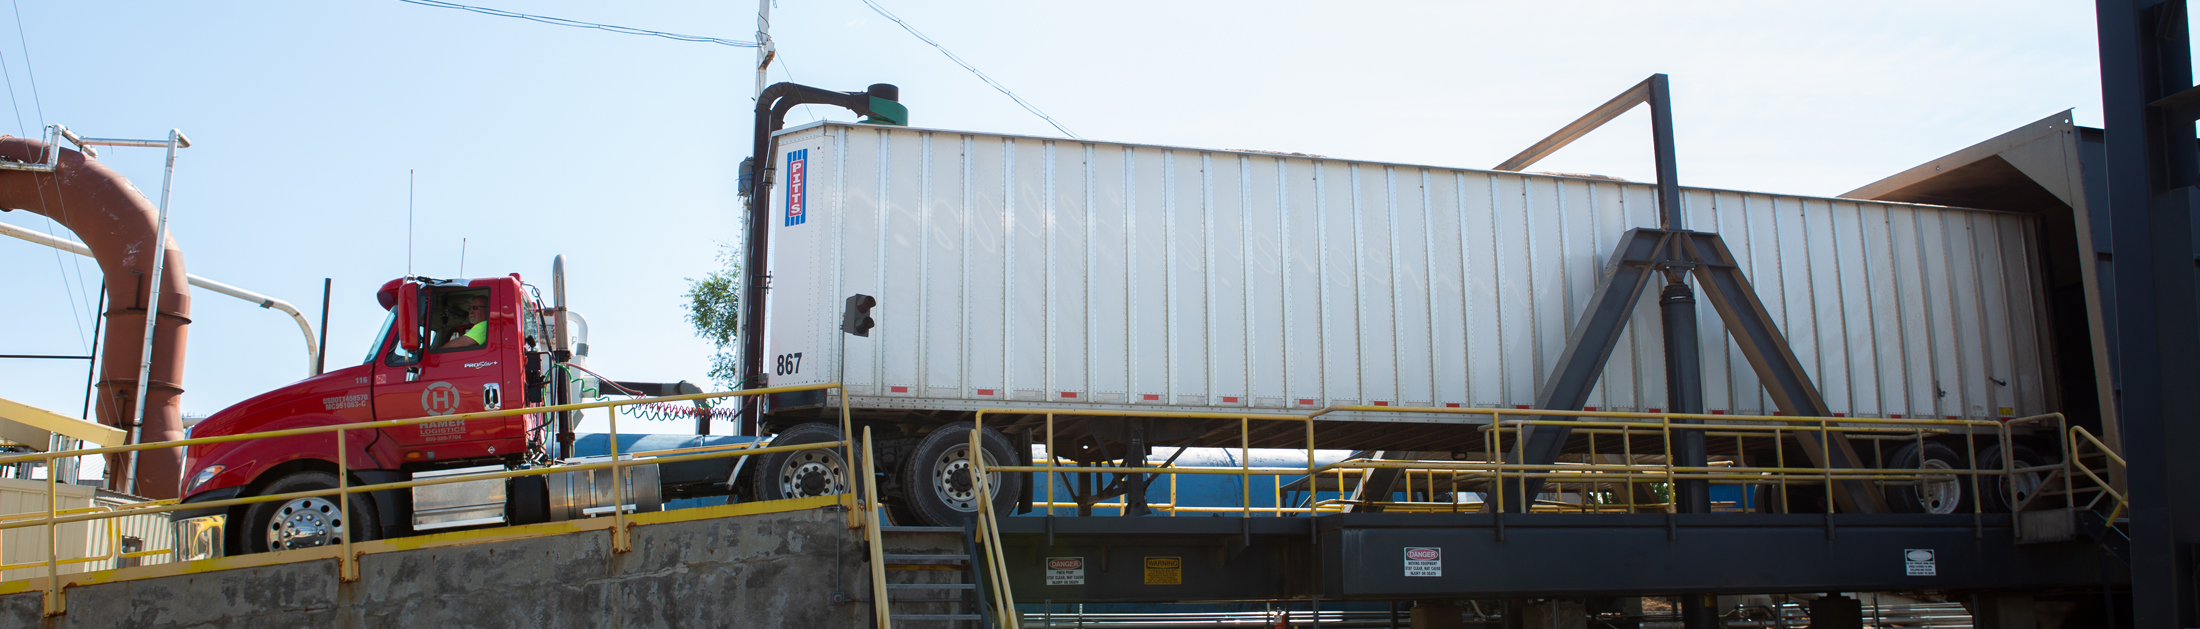 Hamer truck on the loading dock